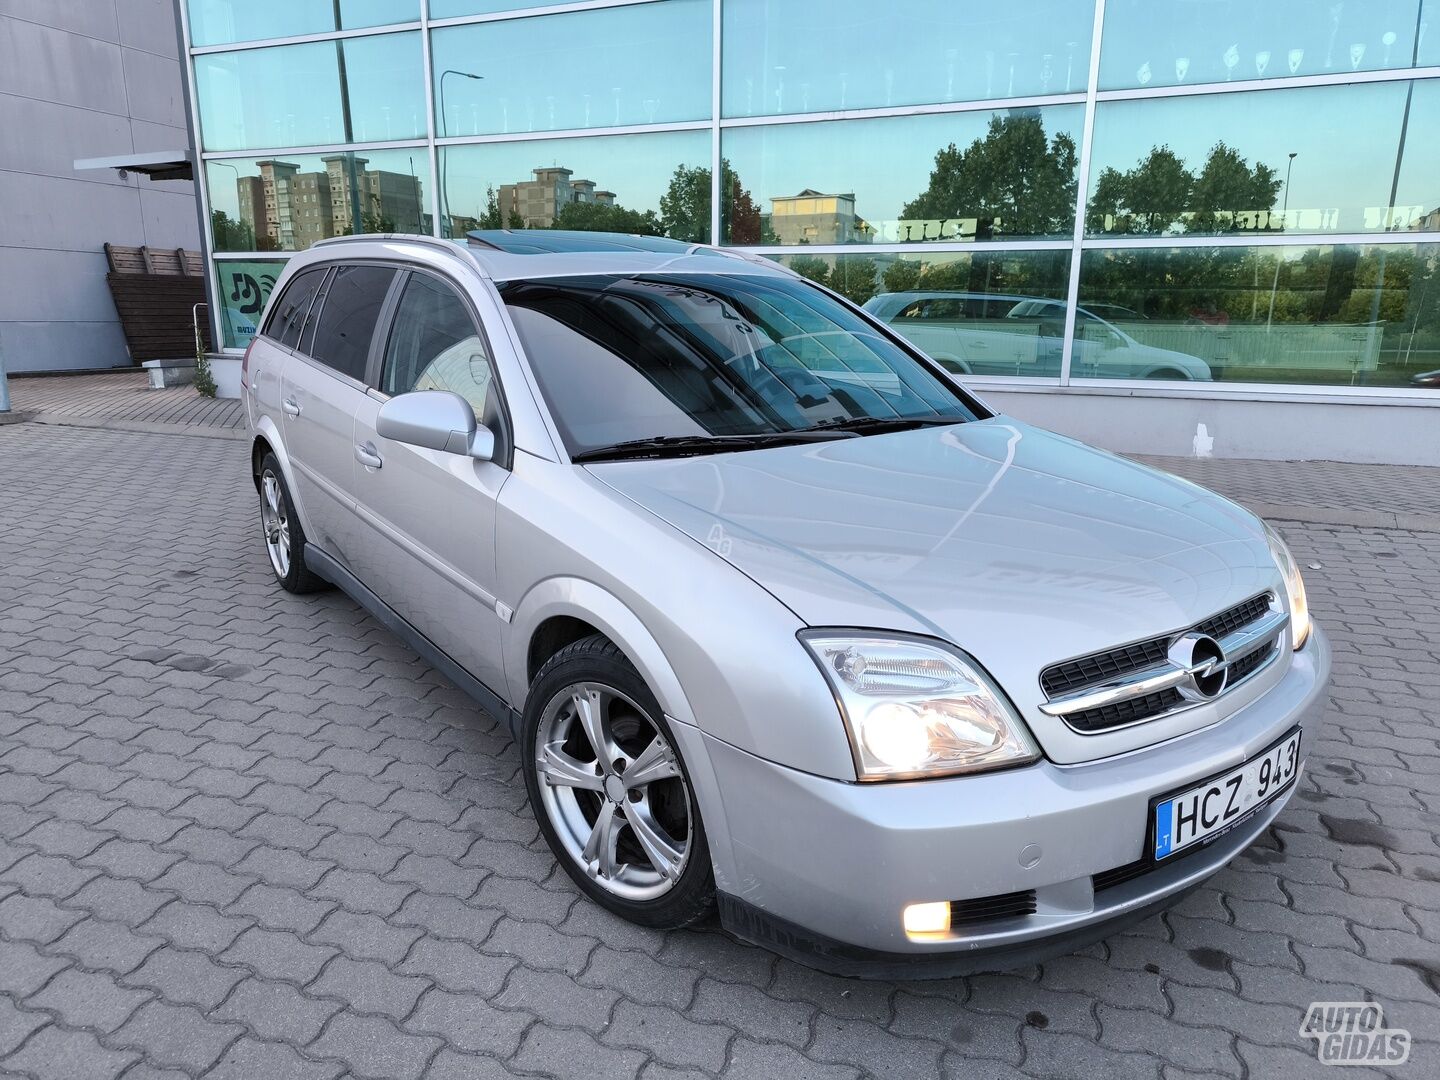 Opel Vectra C DTI Comfort 2004 m